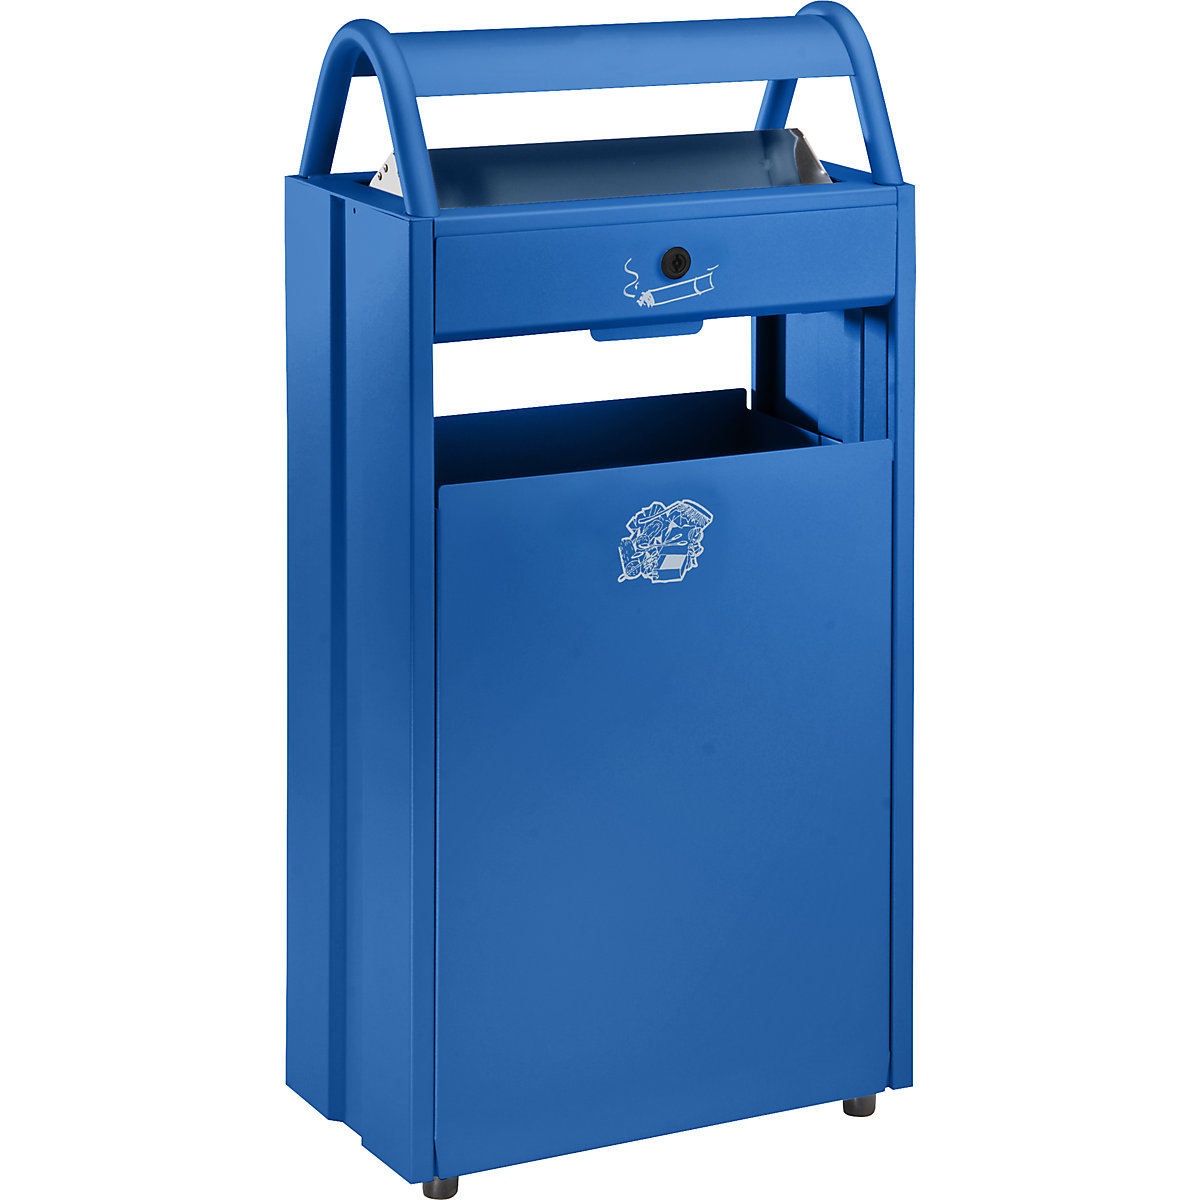 Afvalbak met asbak en beschermkap tegen regen – VAR, inhoud 60 l, b x h x d = 480 x 960 x 250 mm, gentiaanblauw RAL 5010